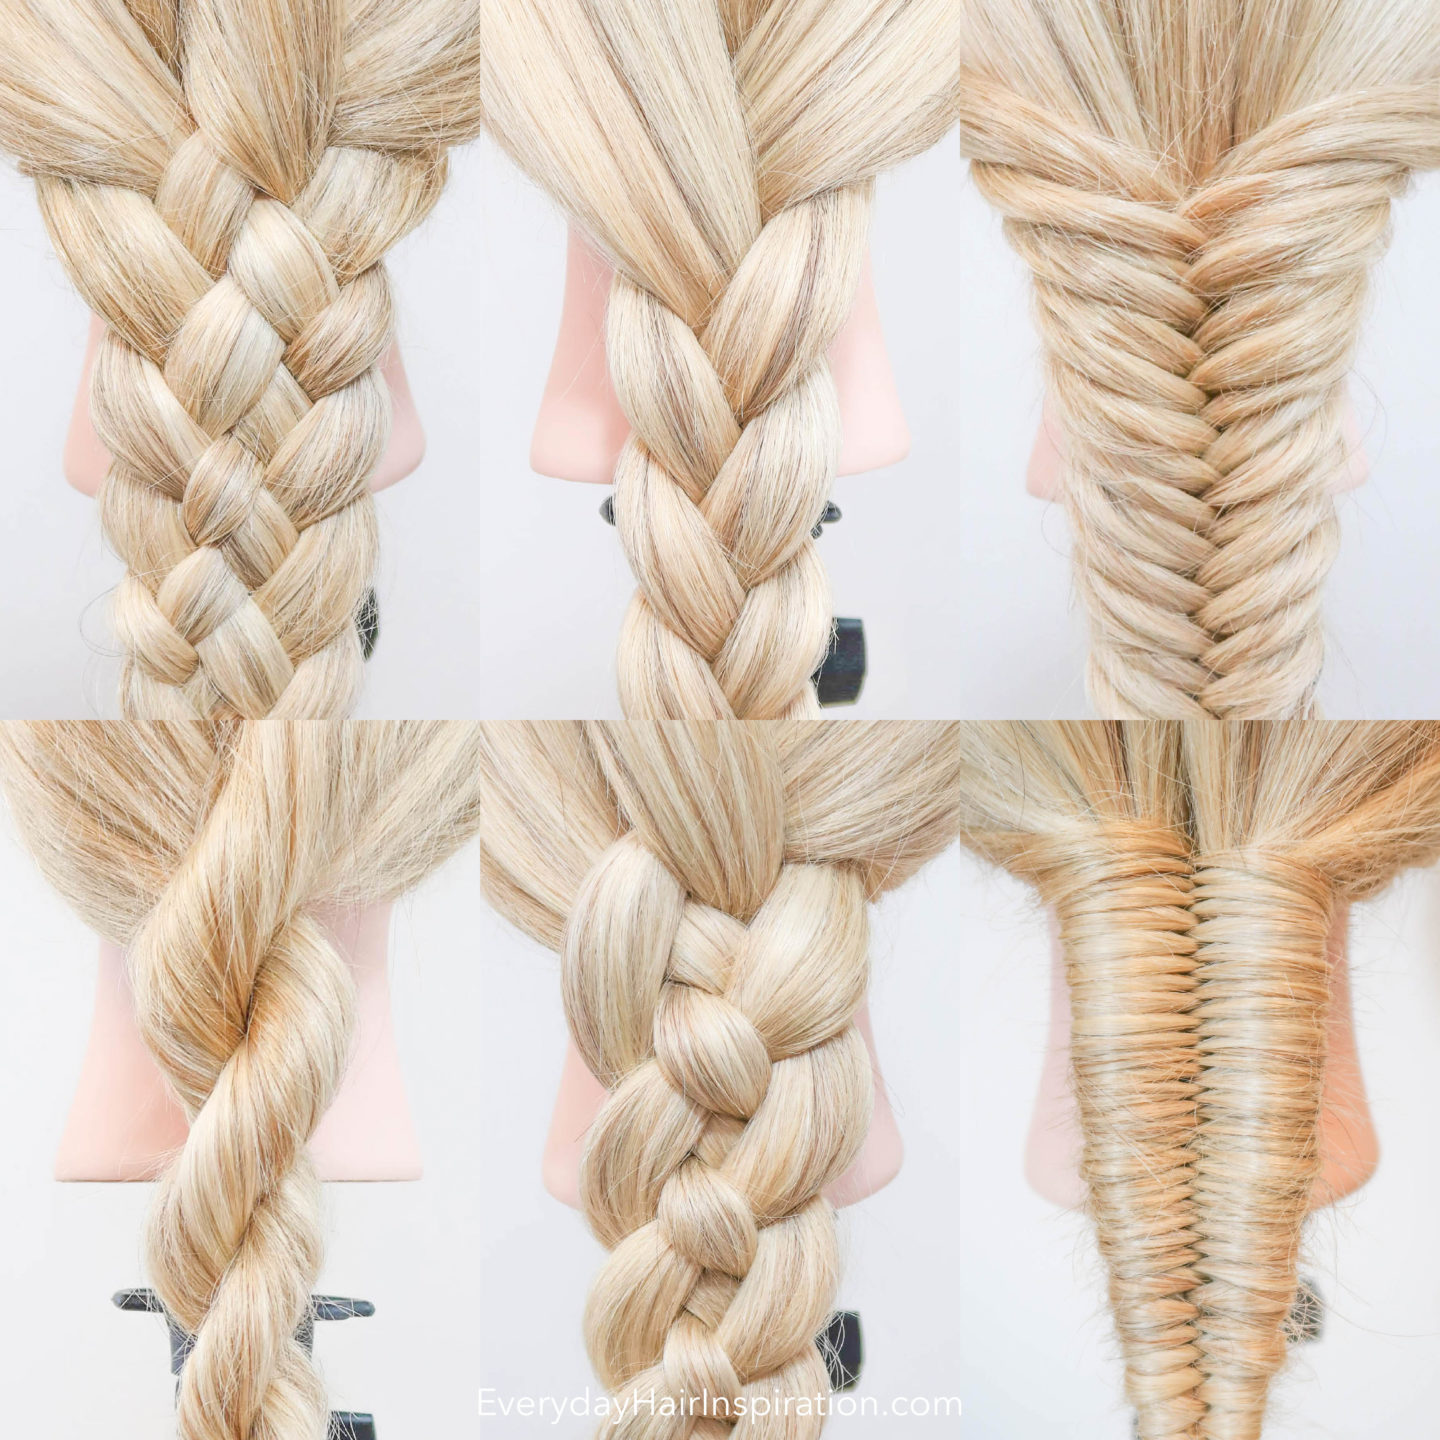 beginner friendly braids